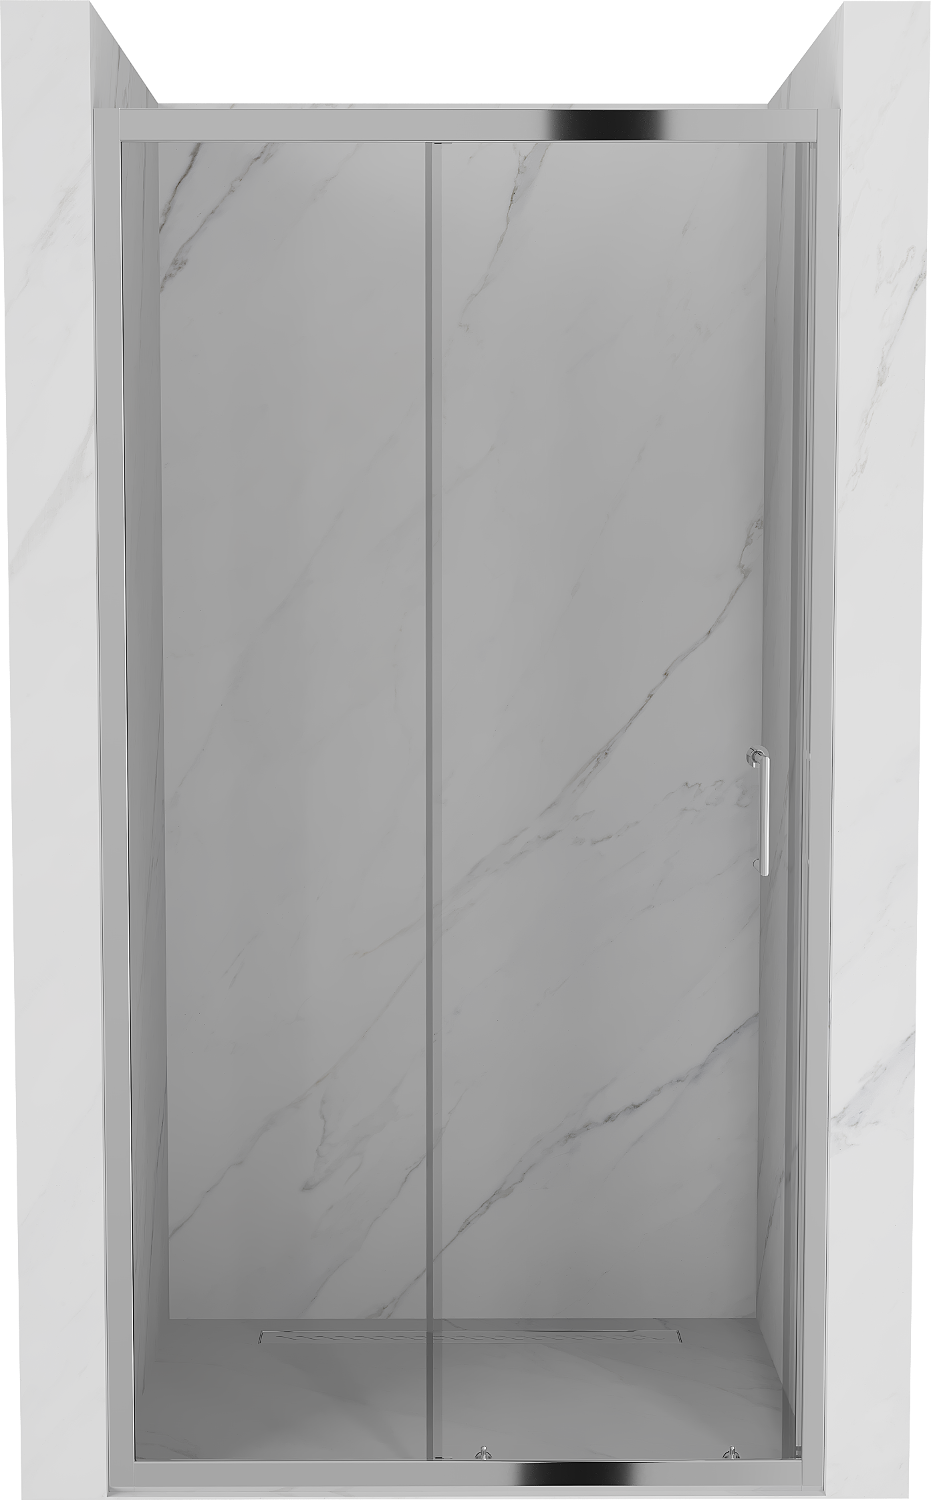 Mexen Apia drzwi prysznicowe rozsuwane 145 cm, transparent, chrom - 845-145-000-01-00